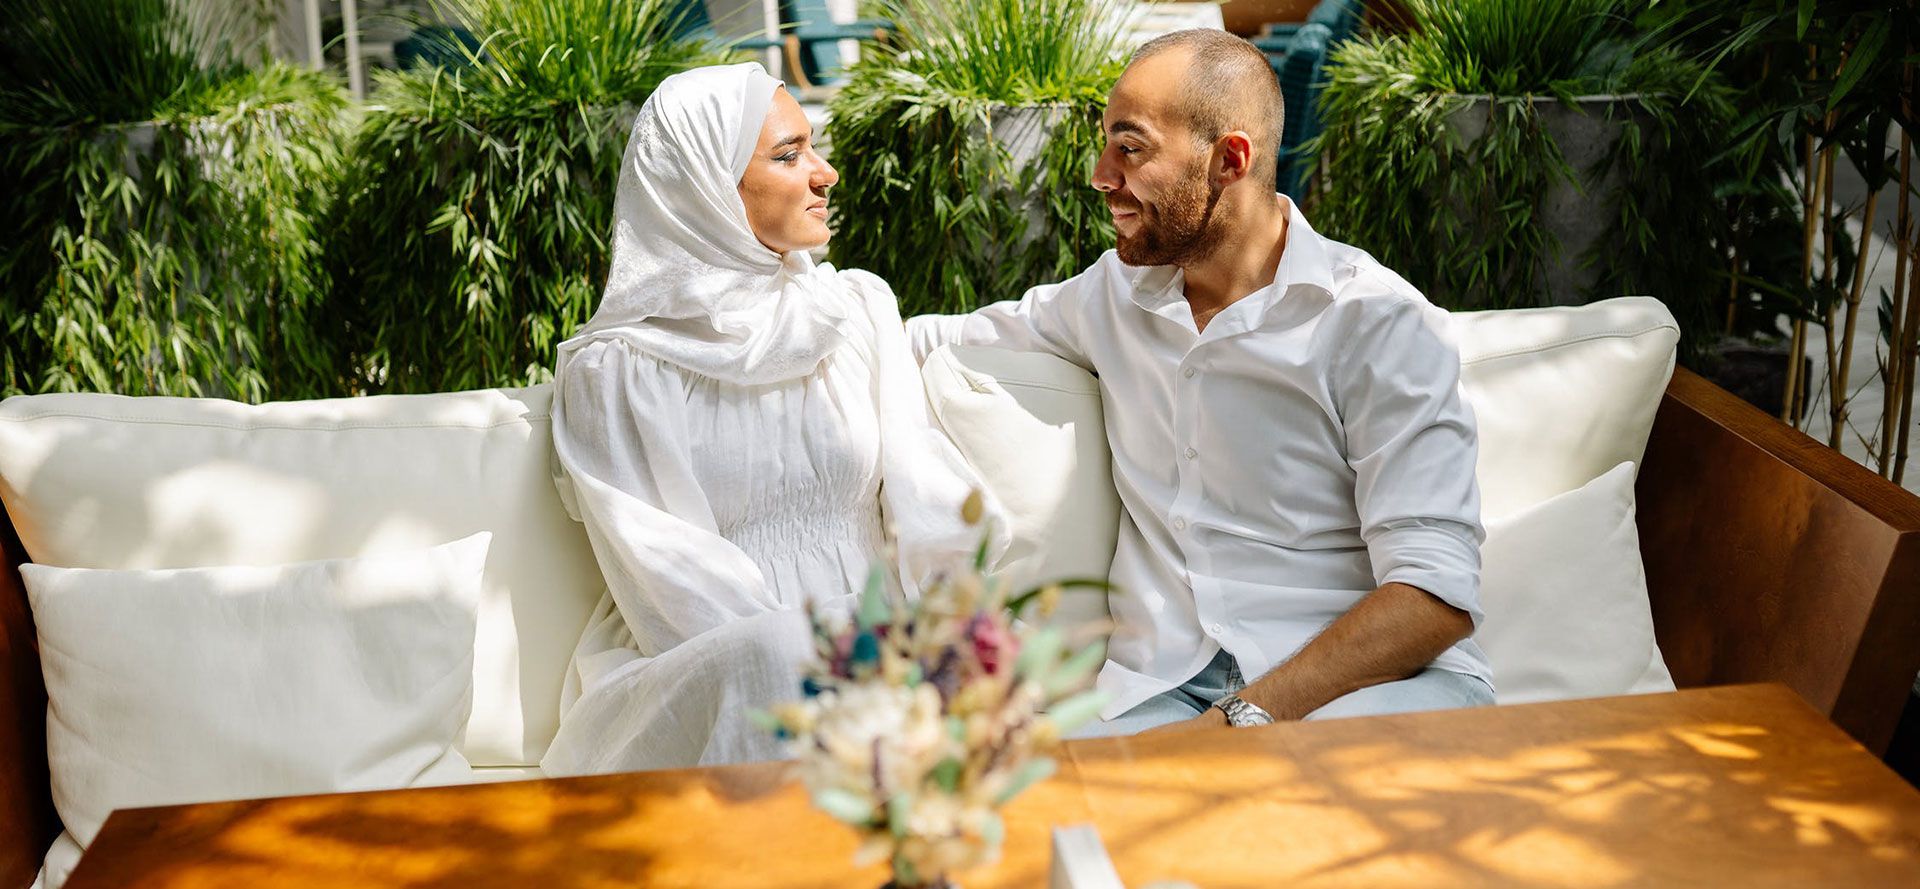 Muslimische Singles bei einem Date.